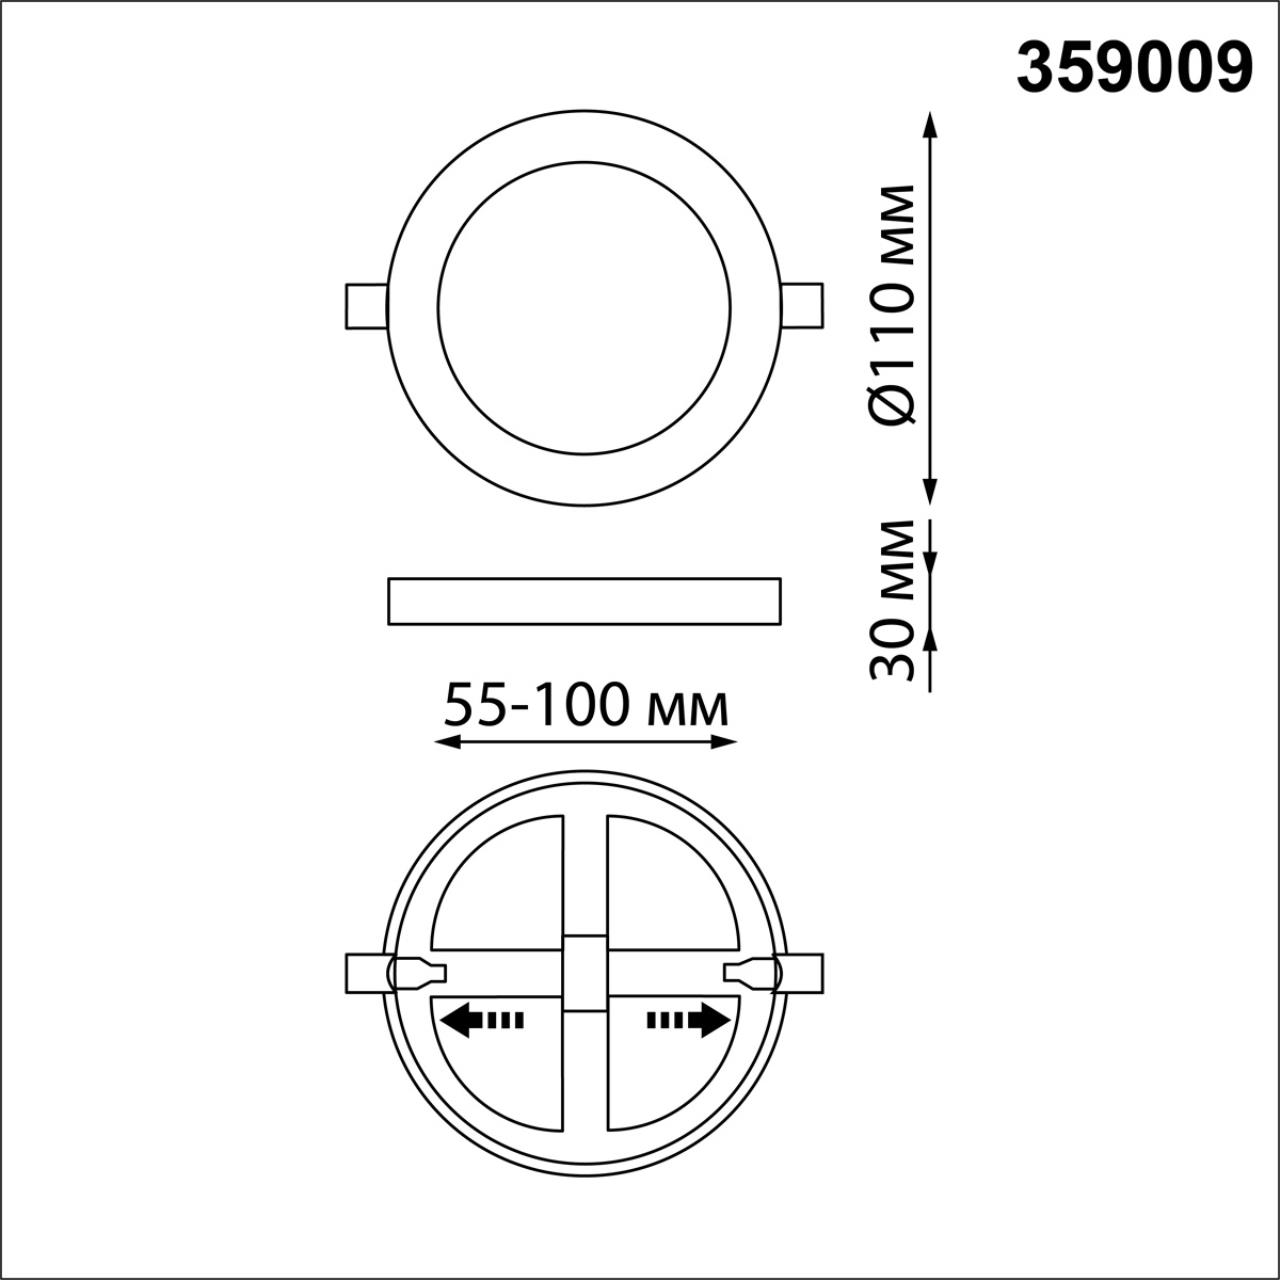 Трёхрежимный встраиваемый светодиодный светильник Novotech SPAN 359009